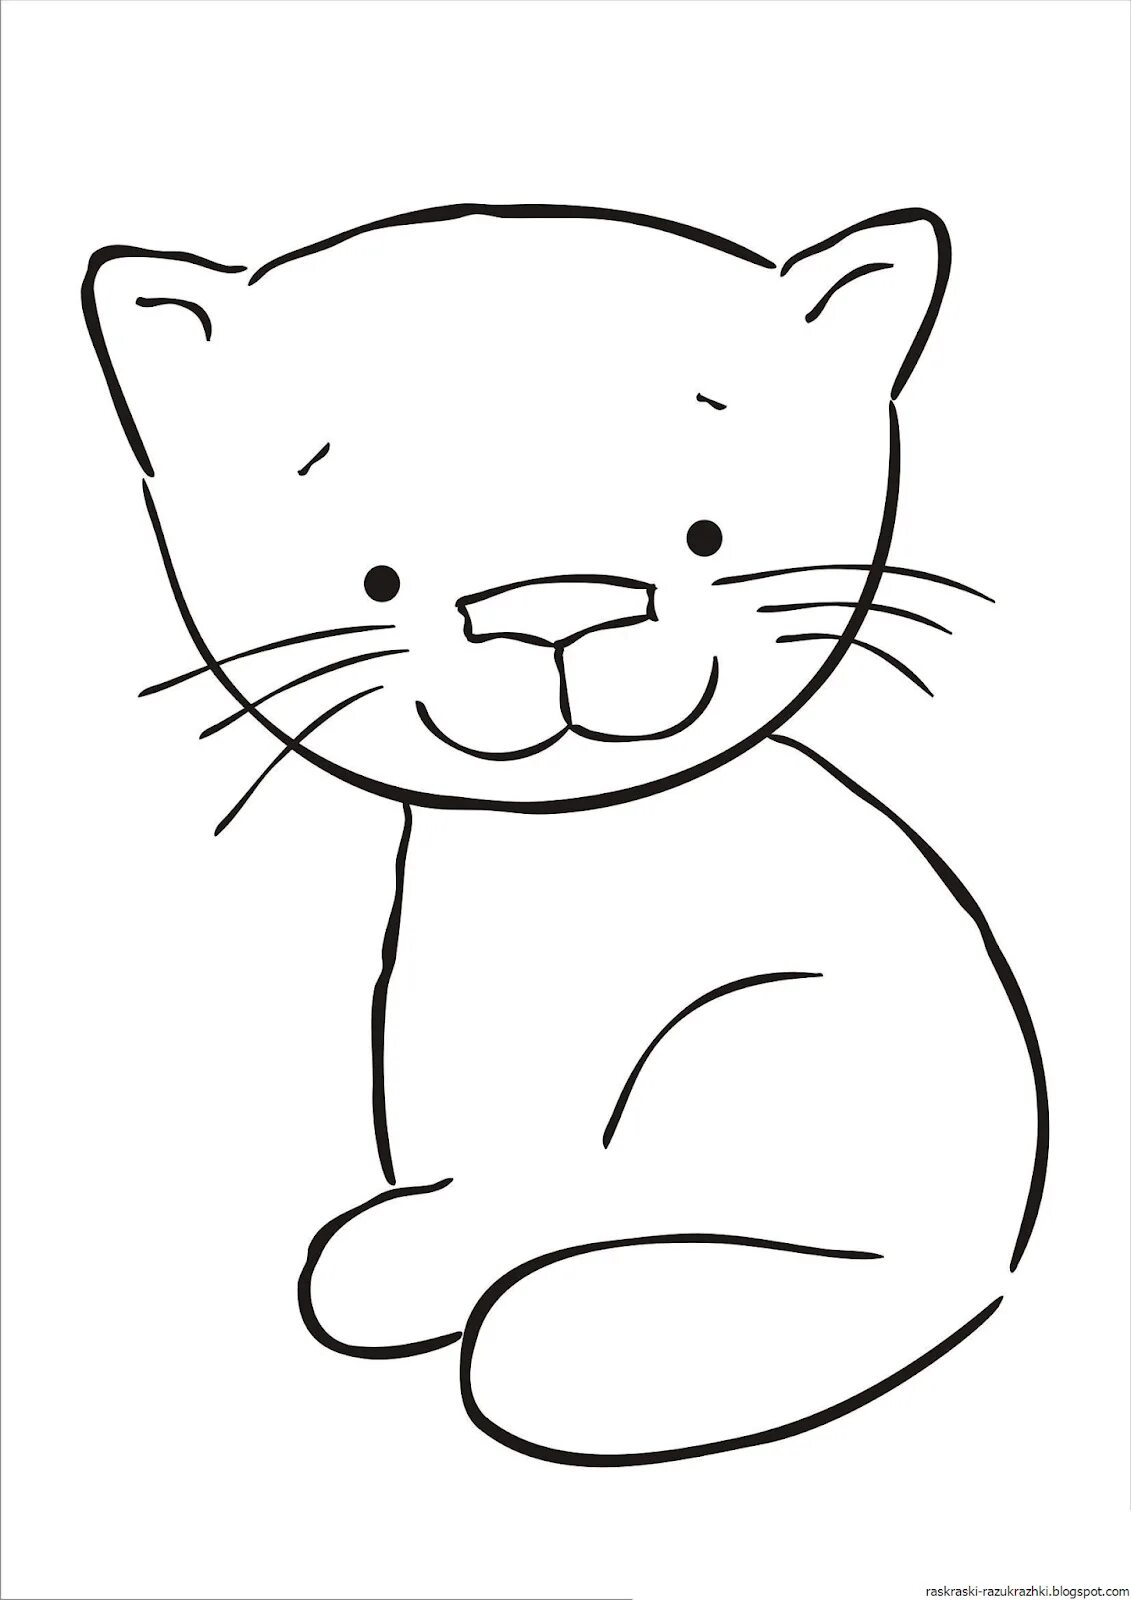 Котики раскраска для детей 3 4 лет. Кошка раскраска для детей. Котик раскраска для детей. Кошка рисунок для детей. Раскраска кошка для детей 3-4 лет.